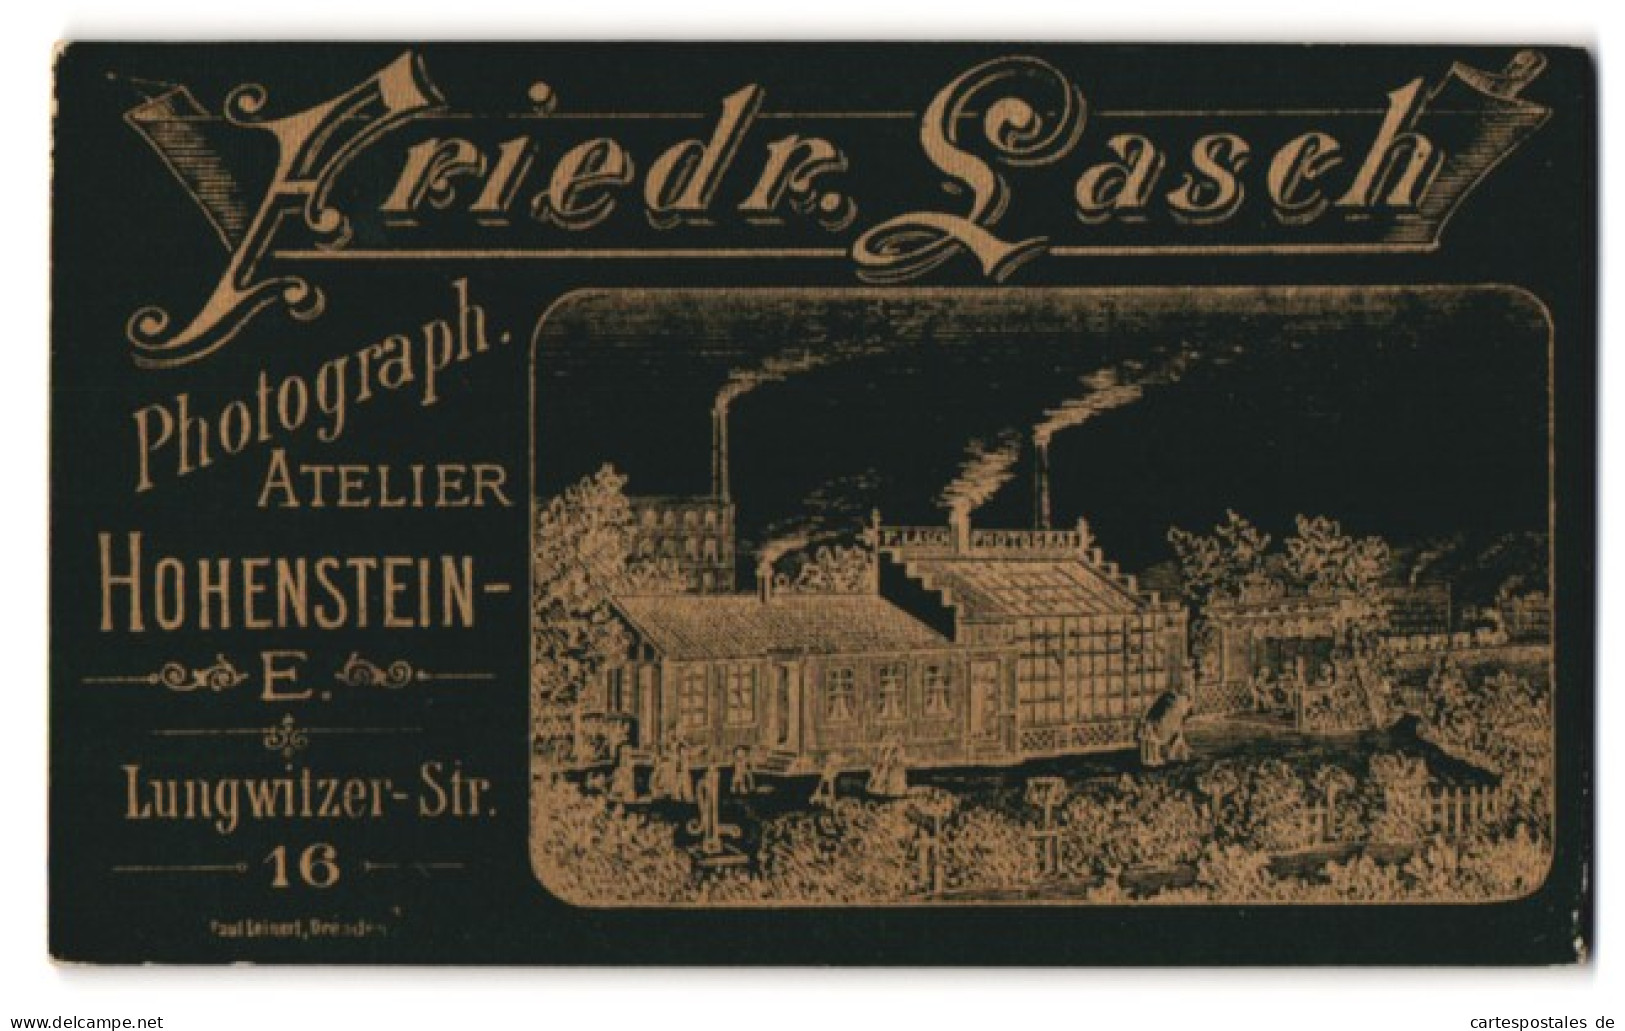 Fotografie Friedr. Lasch, Hohenstein-Ernstthal, Lungwitzer-Str. 16, Ansicht Hohenstein-Ernstthal, Ateliersgebäude  - Lieux